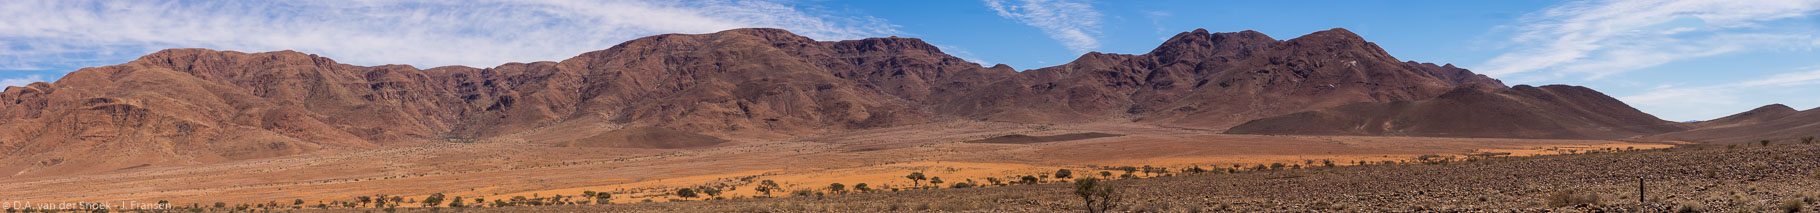 Namibië-0890-0897_v1.jpg